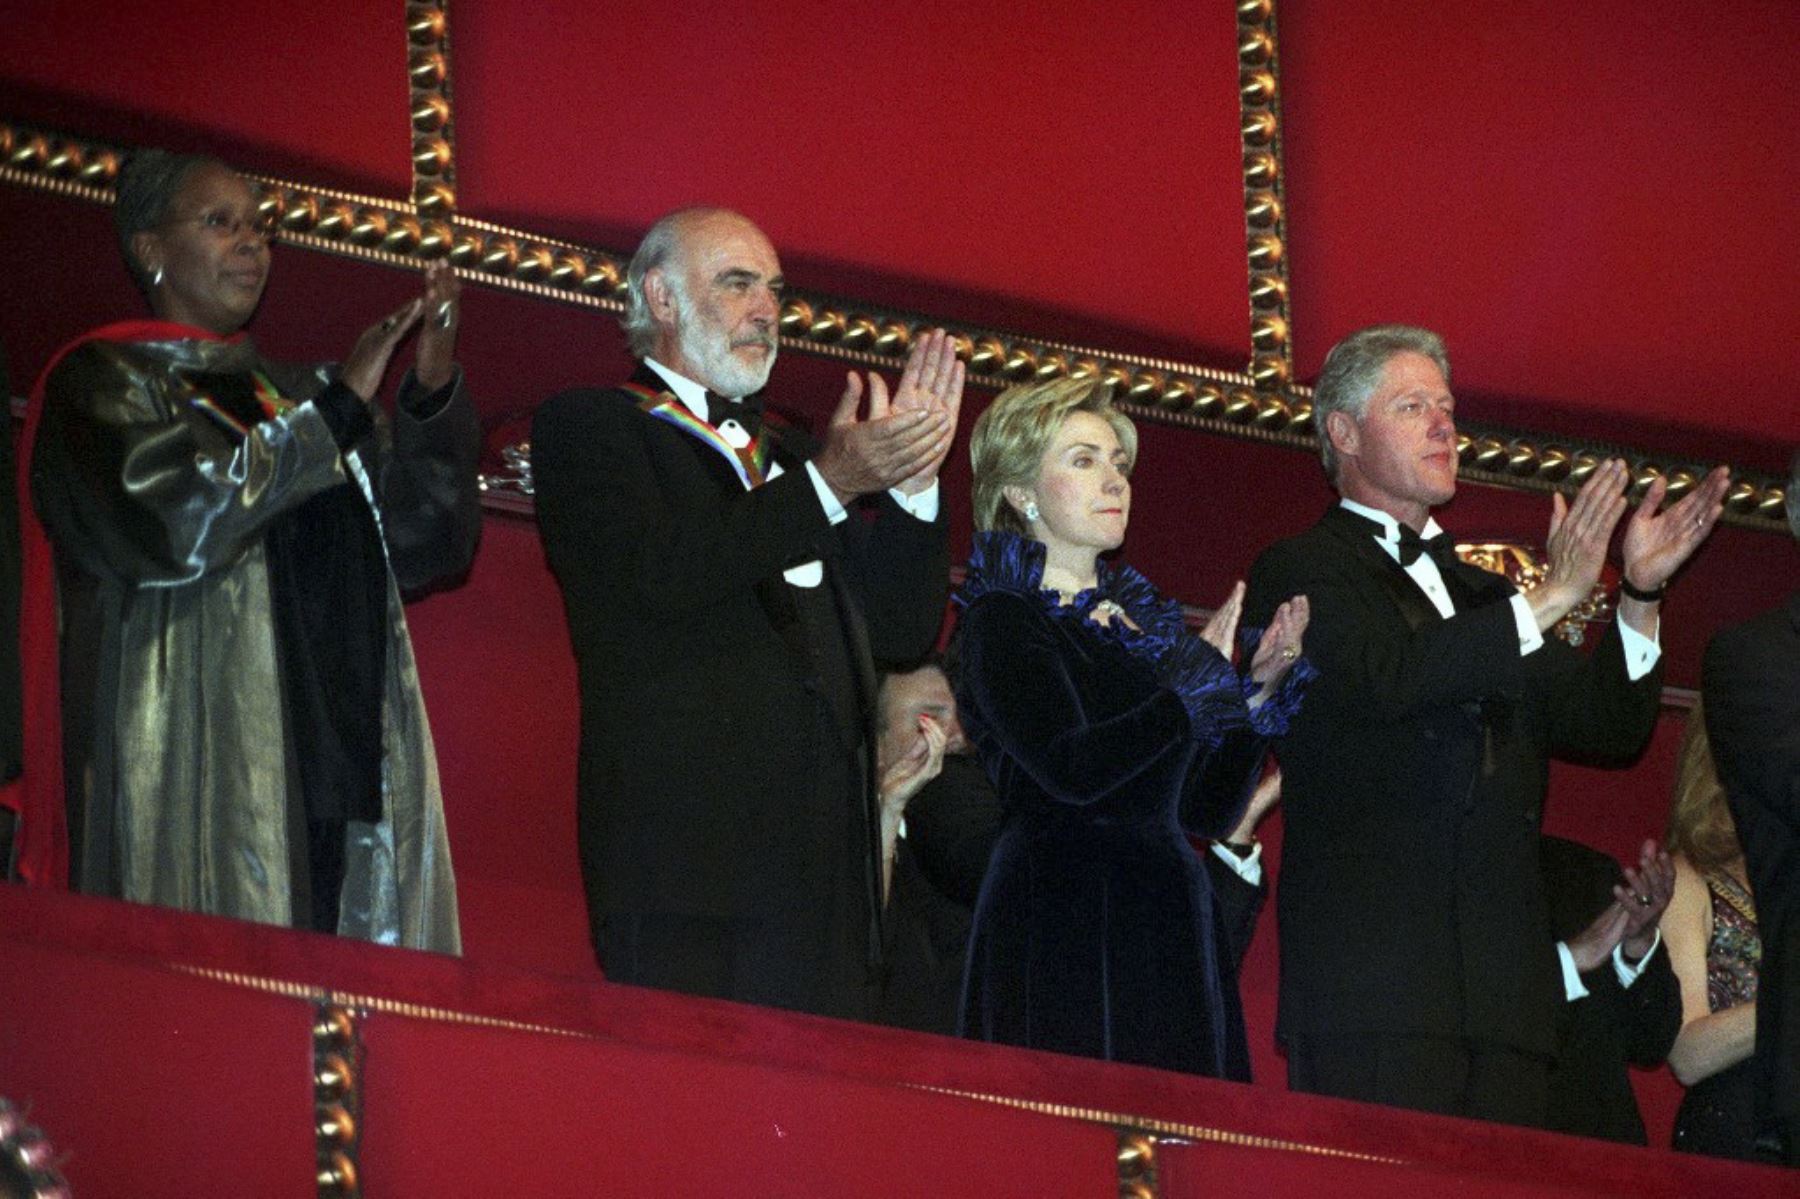 Los homenajeados del Kennedy Center, la bailarina estadounidense Judith Jamison y el actor escocés Sean Connery,  aplauden con la Primera Dama Hillary Clinton y el Presidente de los Estados Unidos Bill Clinton, en el Kennedy Center el 05 de diciembre de 1999 en Washington, DC.Foto:AFP